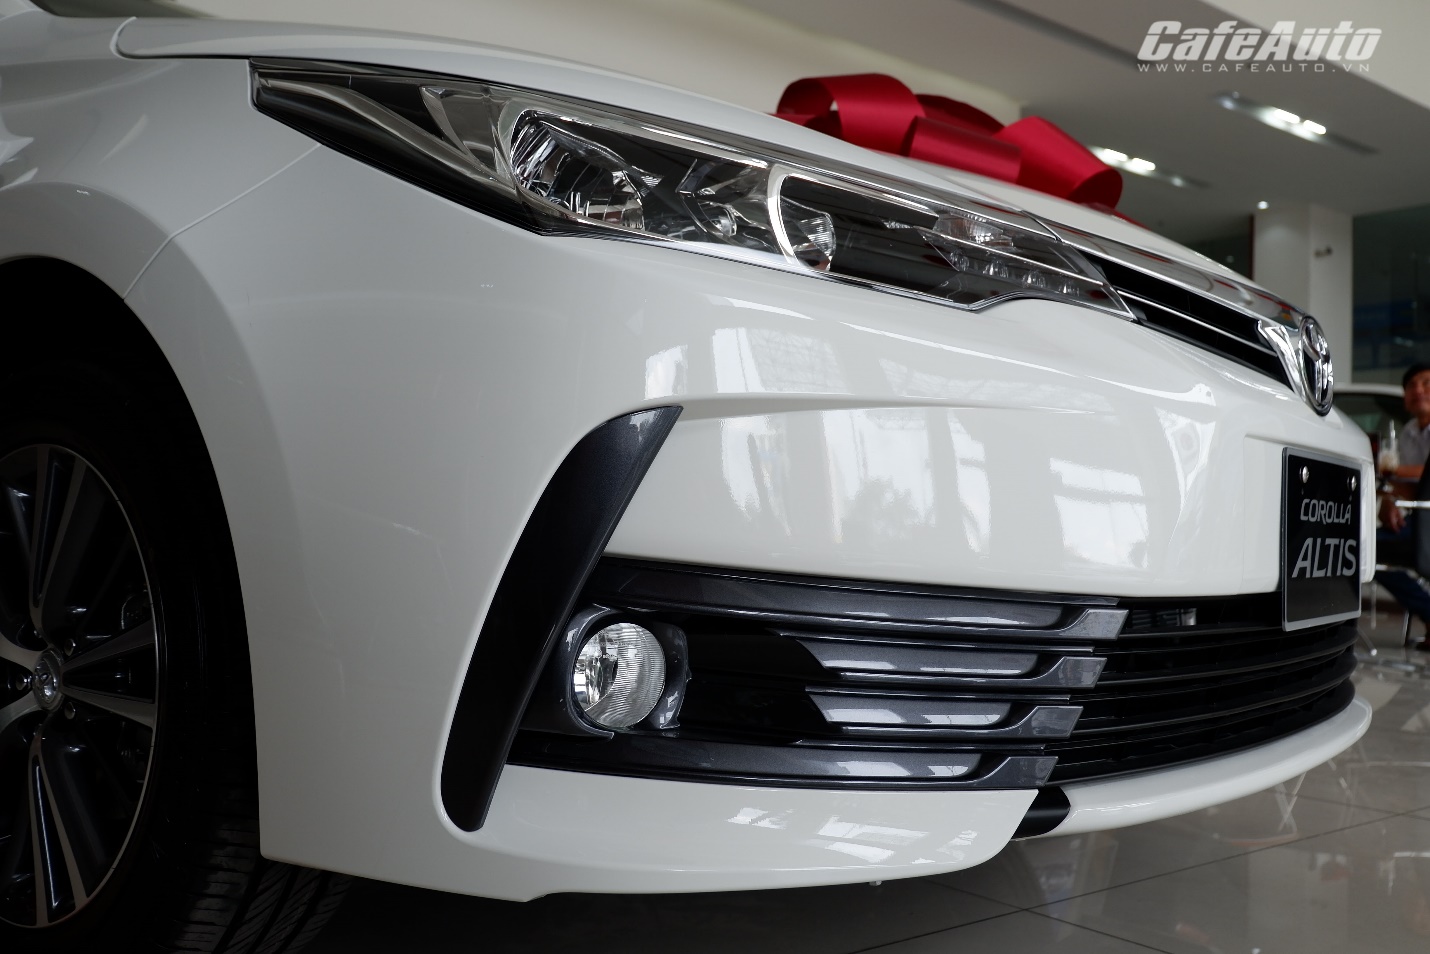 Toyota Corolla Altis phiên bản nâng cấp: bổ sung hệ thống Cruise Control, giá tăng nhẹ - ảnh 4